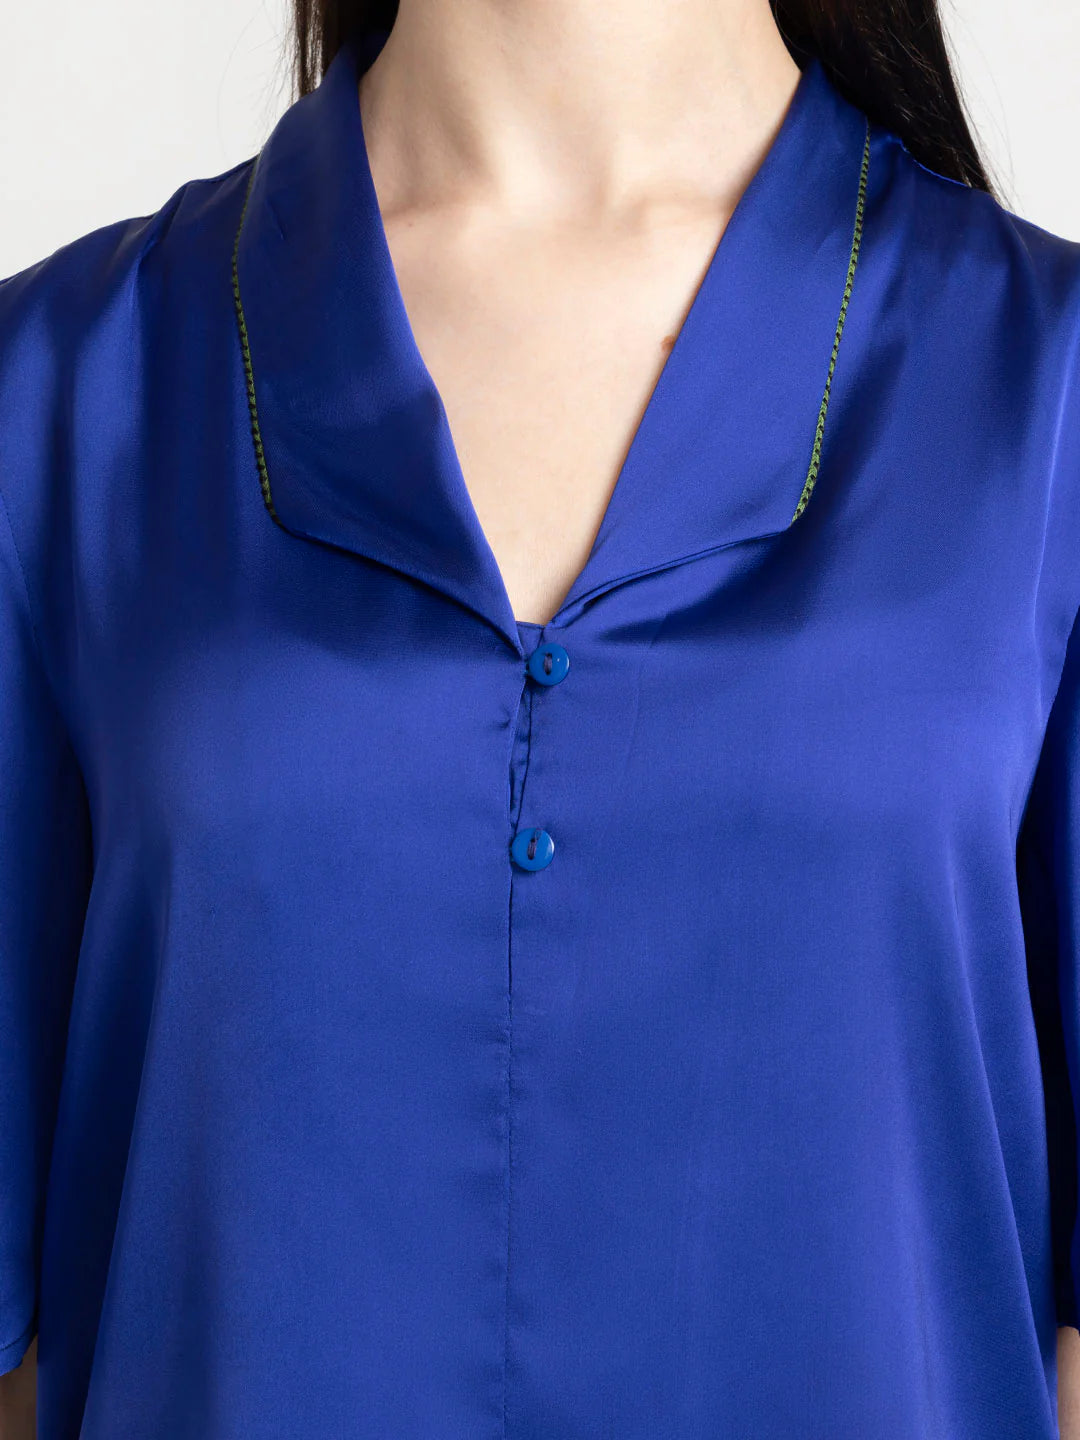 Blue Short Sleeve Shirt for Women | Blue Lace Collar Short Sleeve Shirt